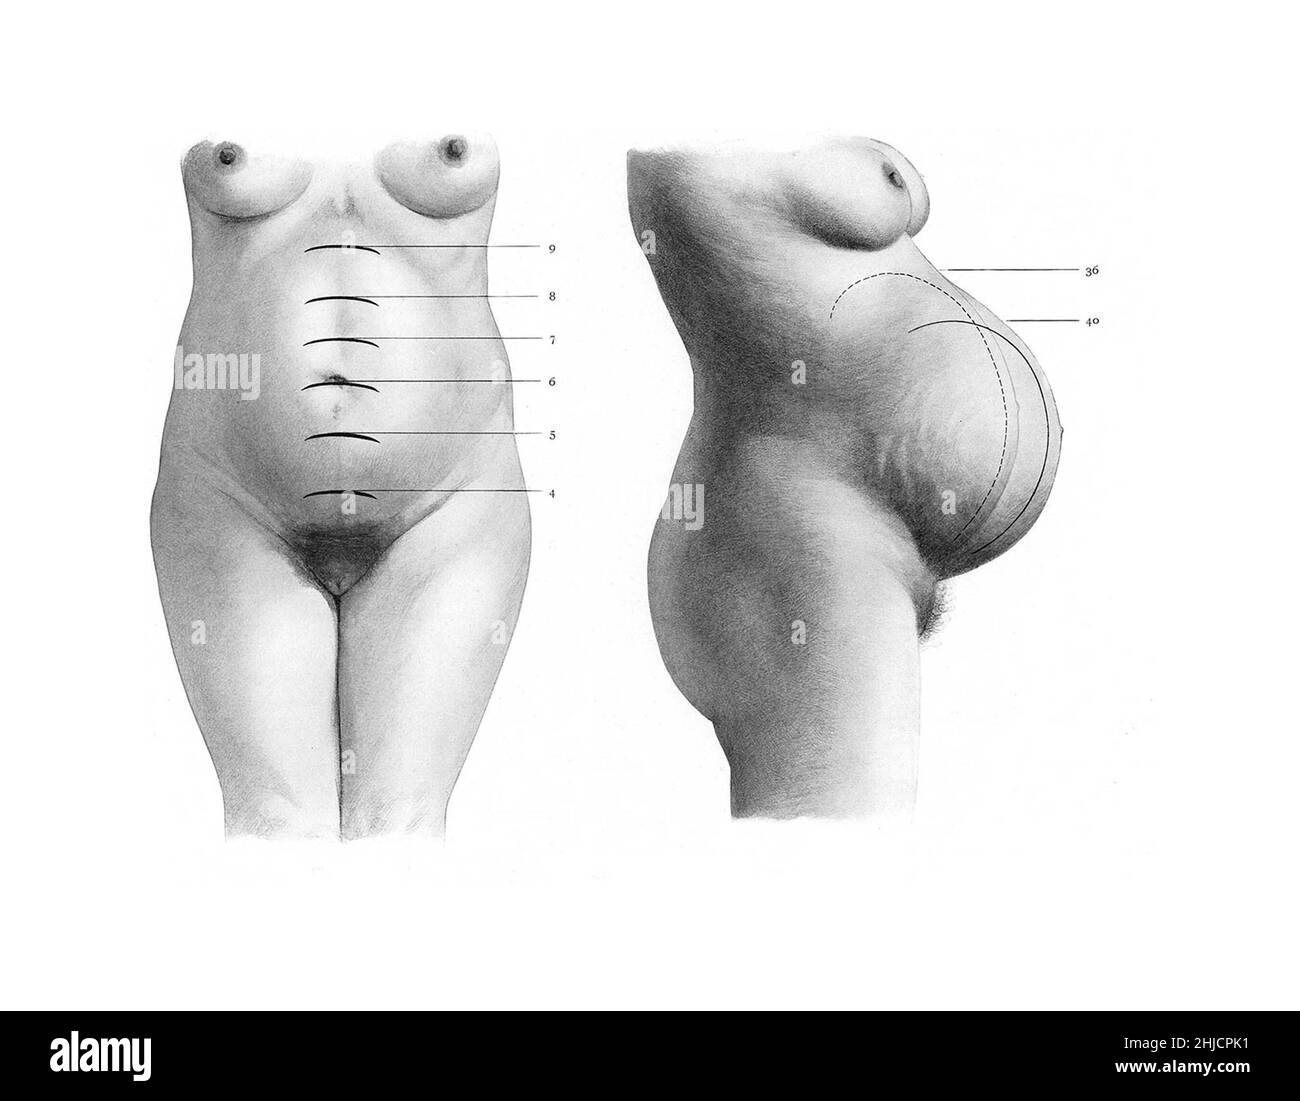 Pendant la grossesse, l'utérus se développe, ce qui représente une partie plus grande et plus importante de l'abdomen de la femme. À gauche se trouve la vue antérieure avec les mois étiquetés ; à droite se trouve une vue latérale portant l'étiquette des 4 dernières semaines. Au cours des dernières étapes de la gestation avant l'accouchement, le fœtus et l'utérus chuteront en position basse. Banque D'Images